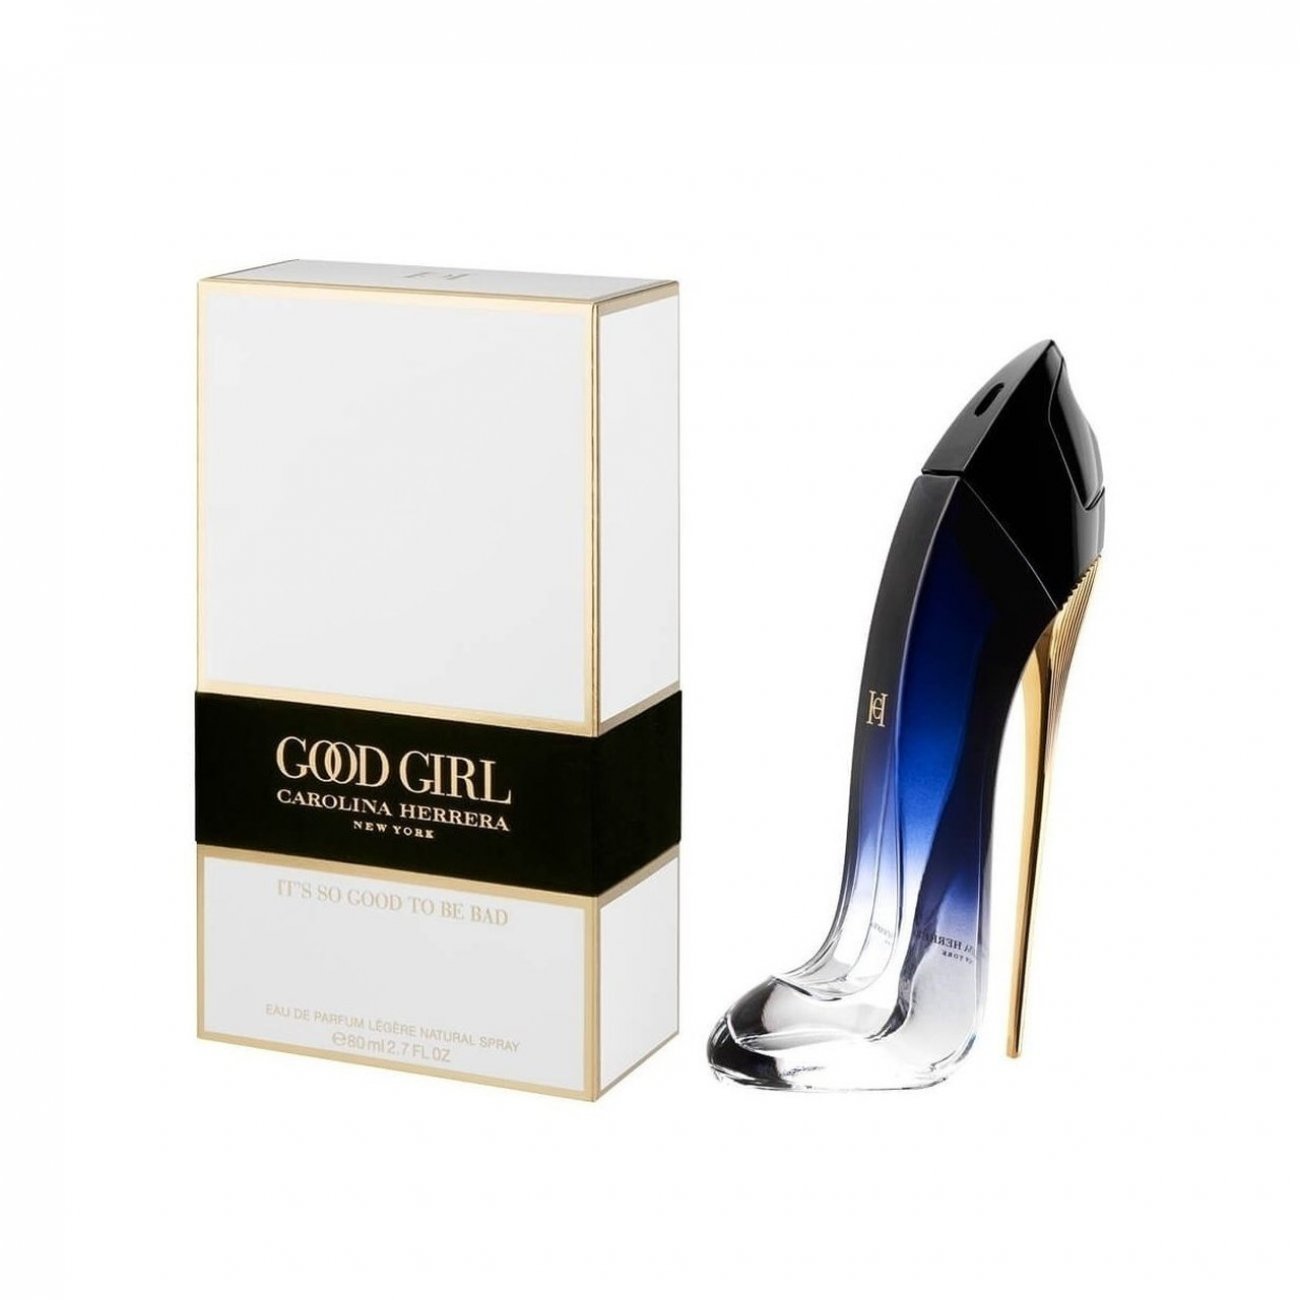 Carolina Herrera Good Girl Eau de Parfum Legere - 1.7 oz